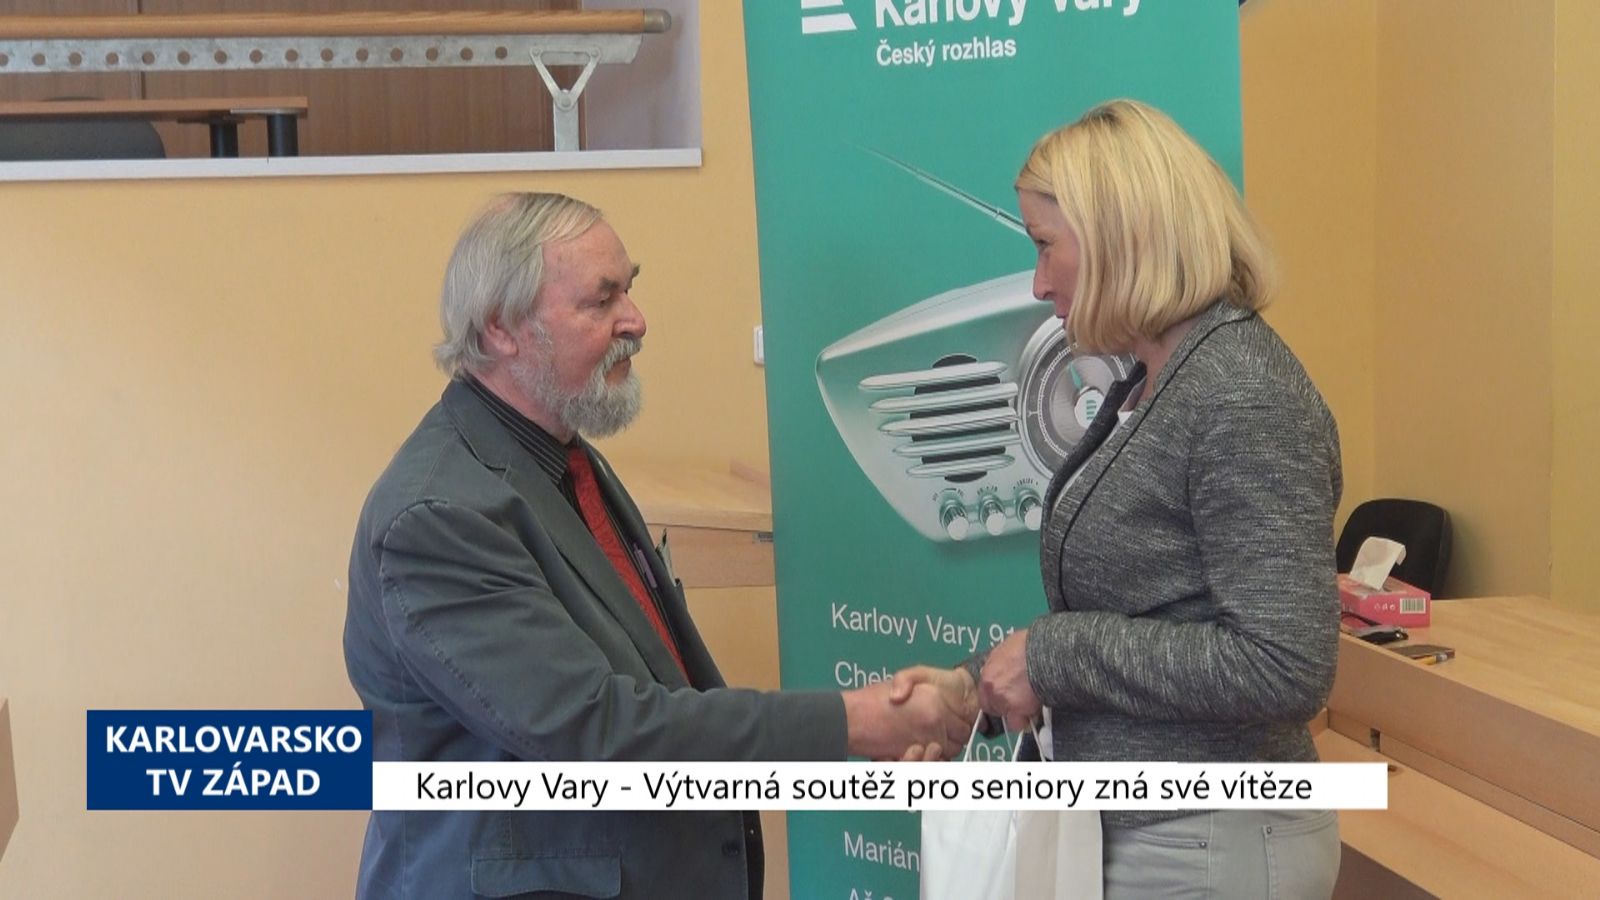 Karlovy Vary: Výtvarná soutěž seniorů zná své vítěze (TV Západ)